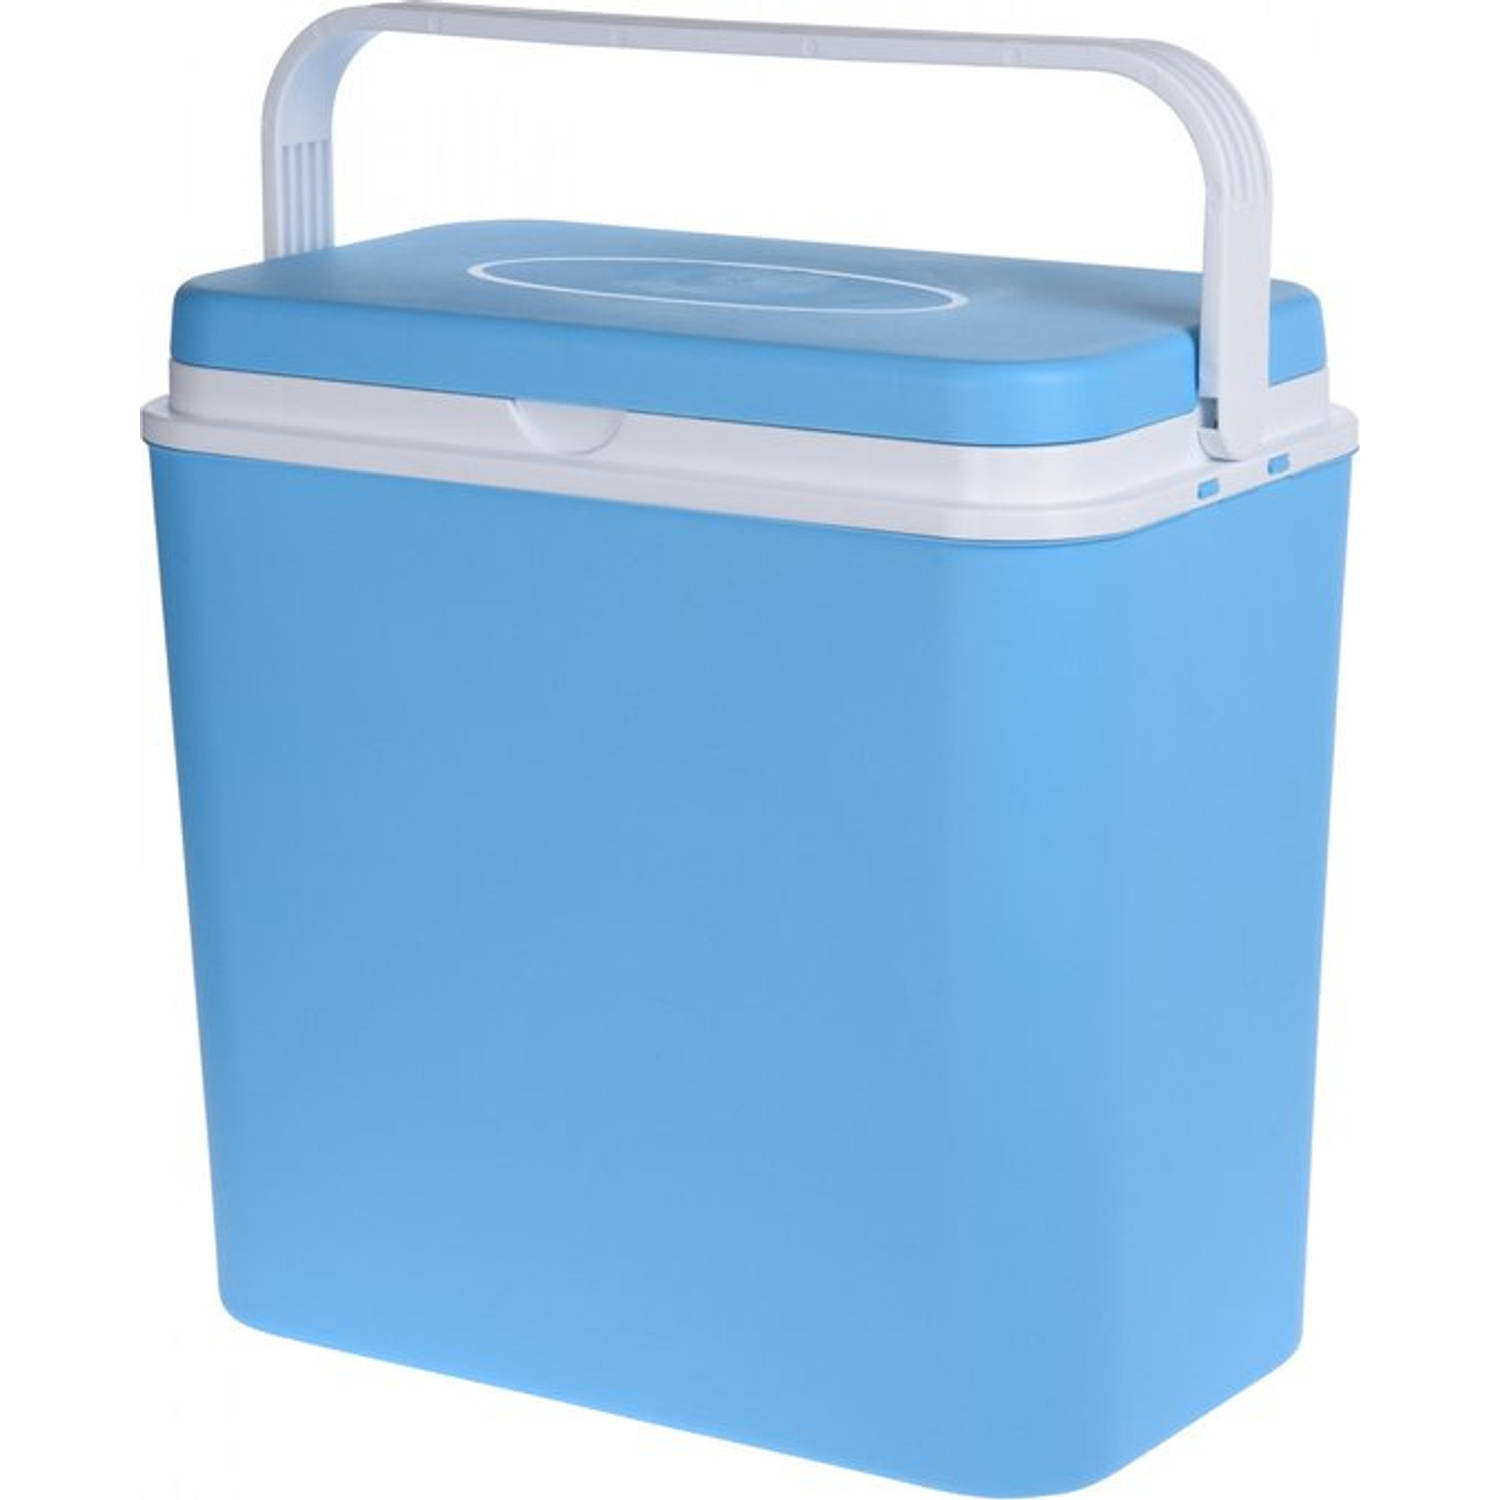 Relaxwonen Koelbox 24 Liter Blauw